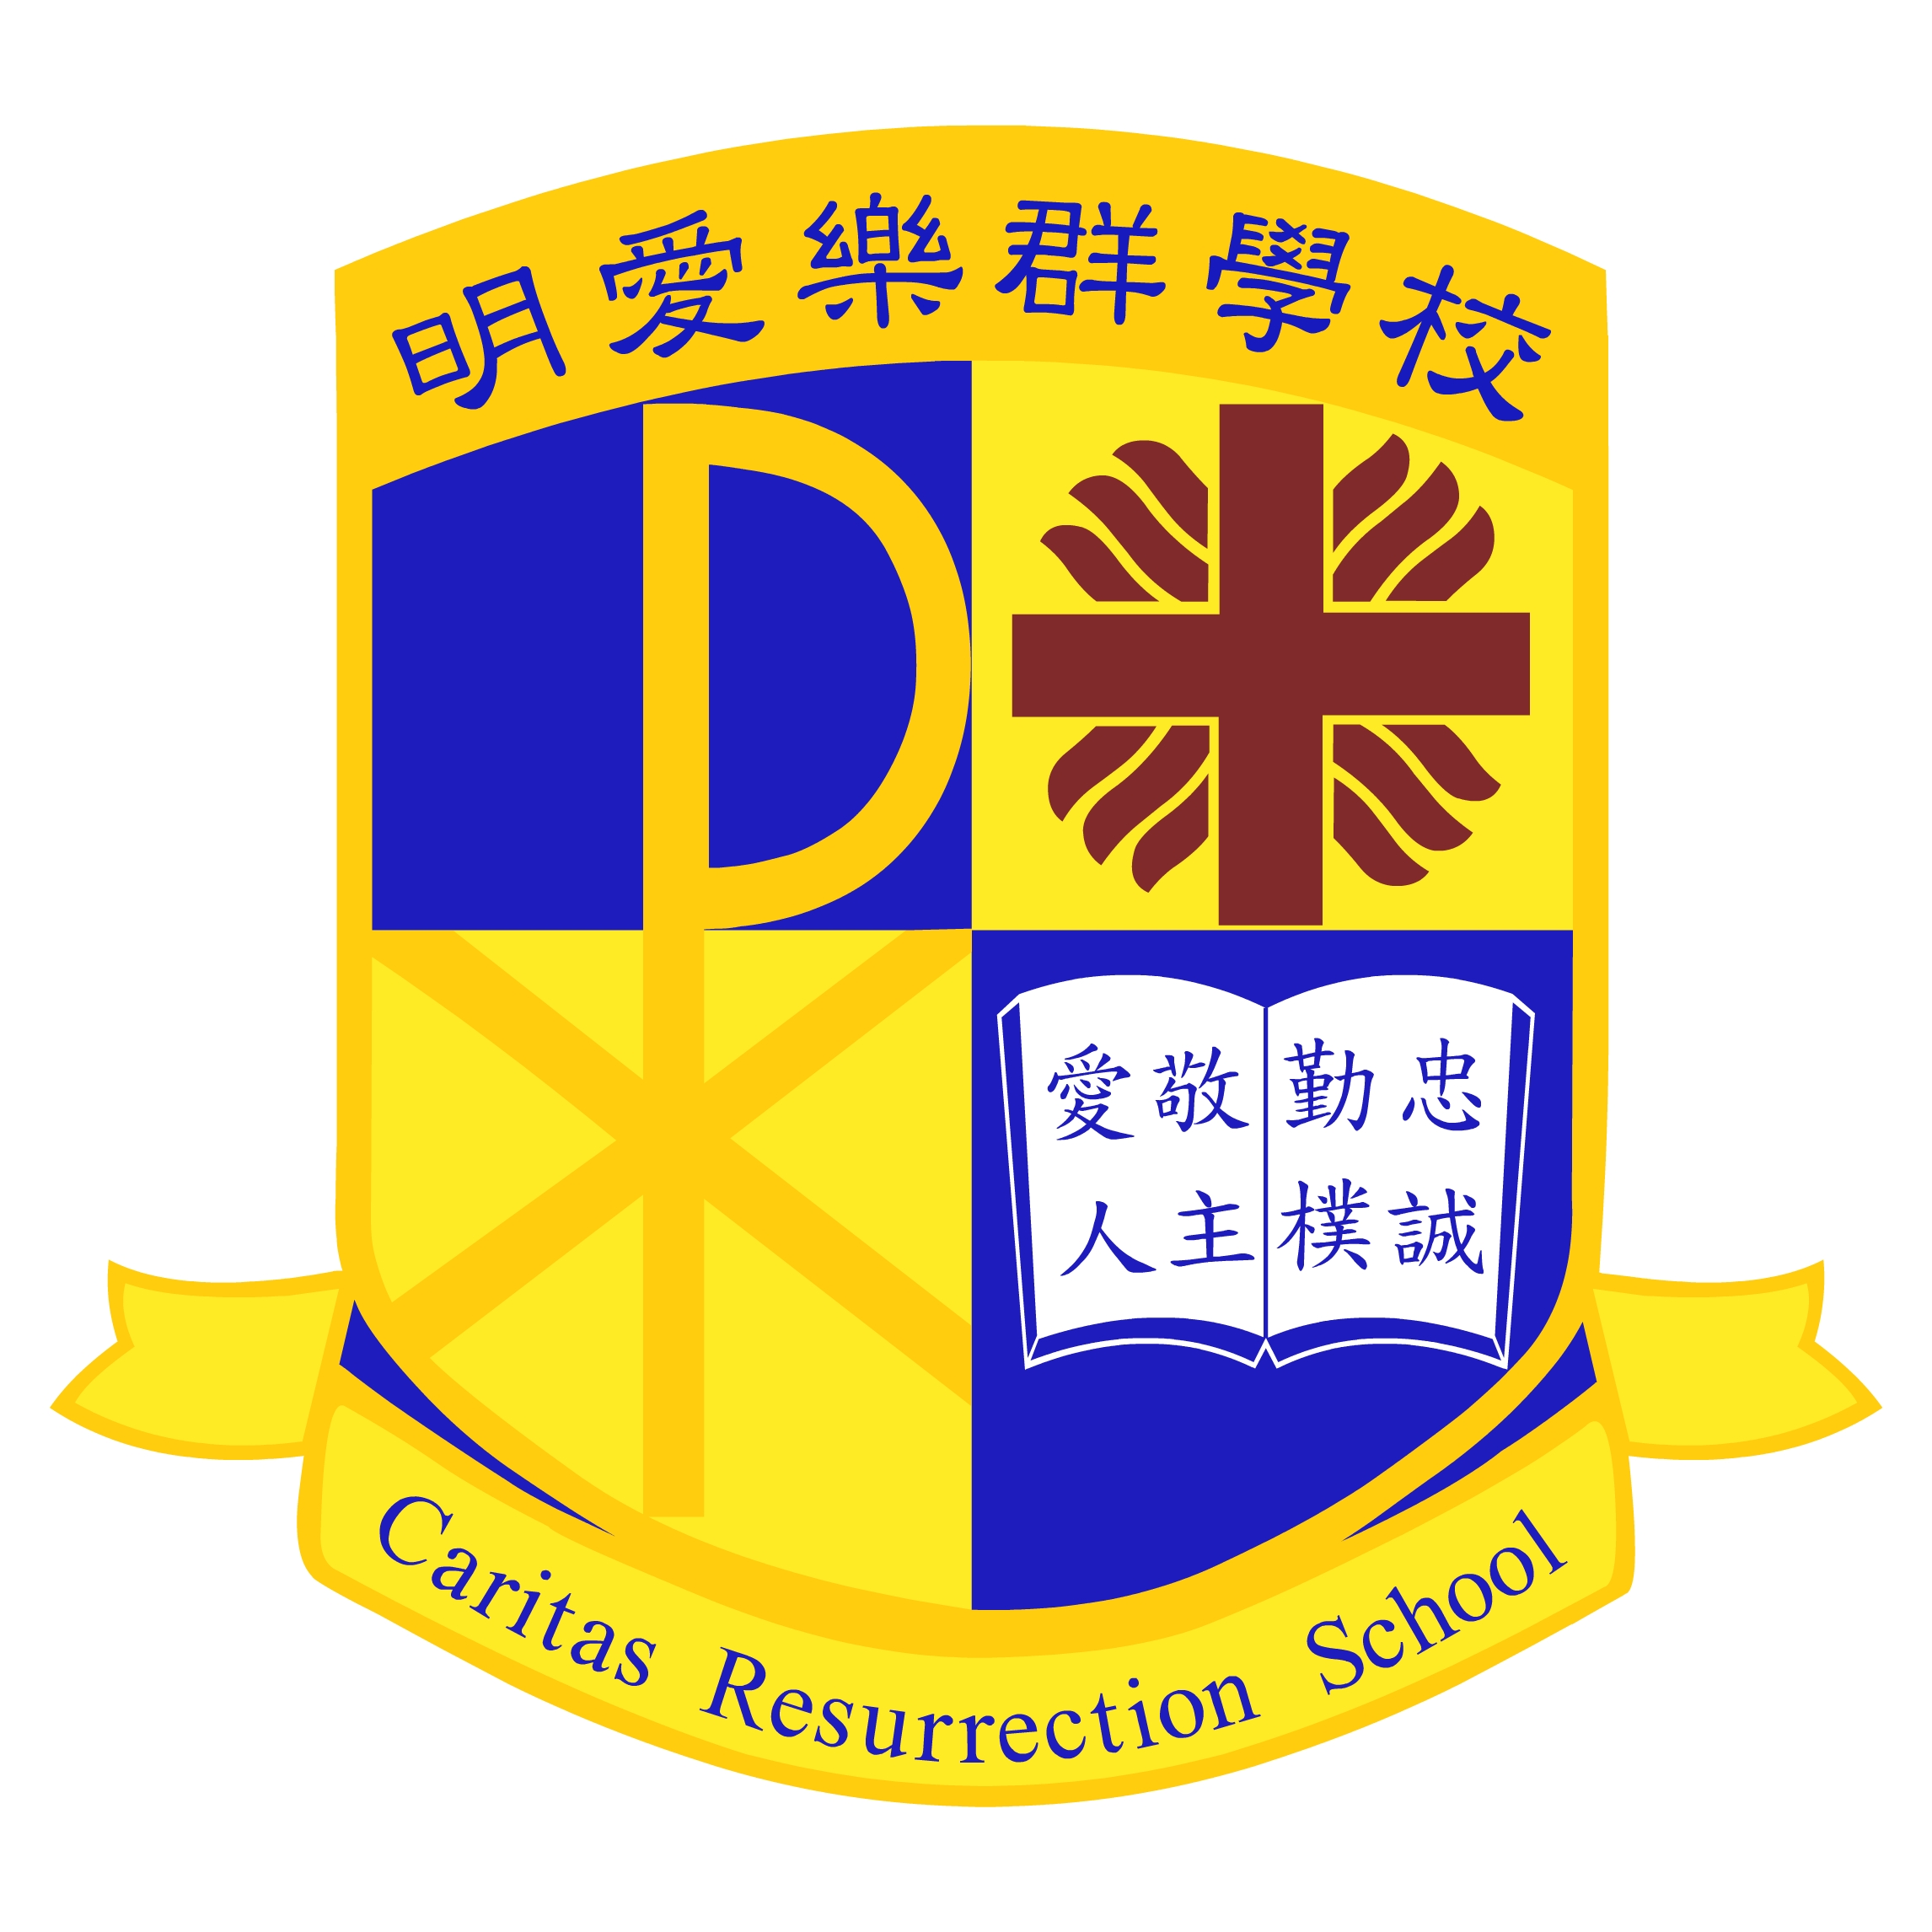 Caritas Resurrection School